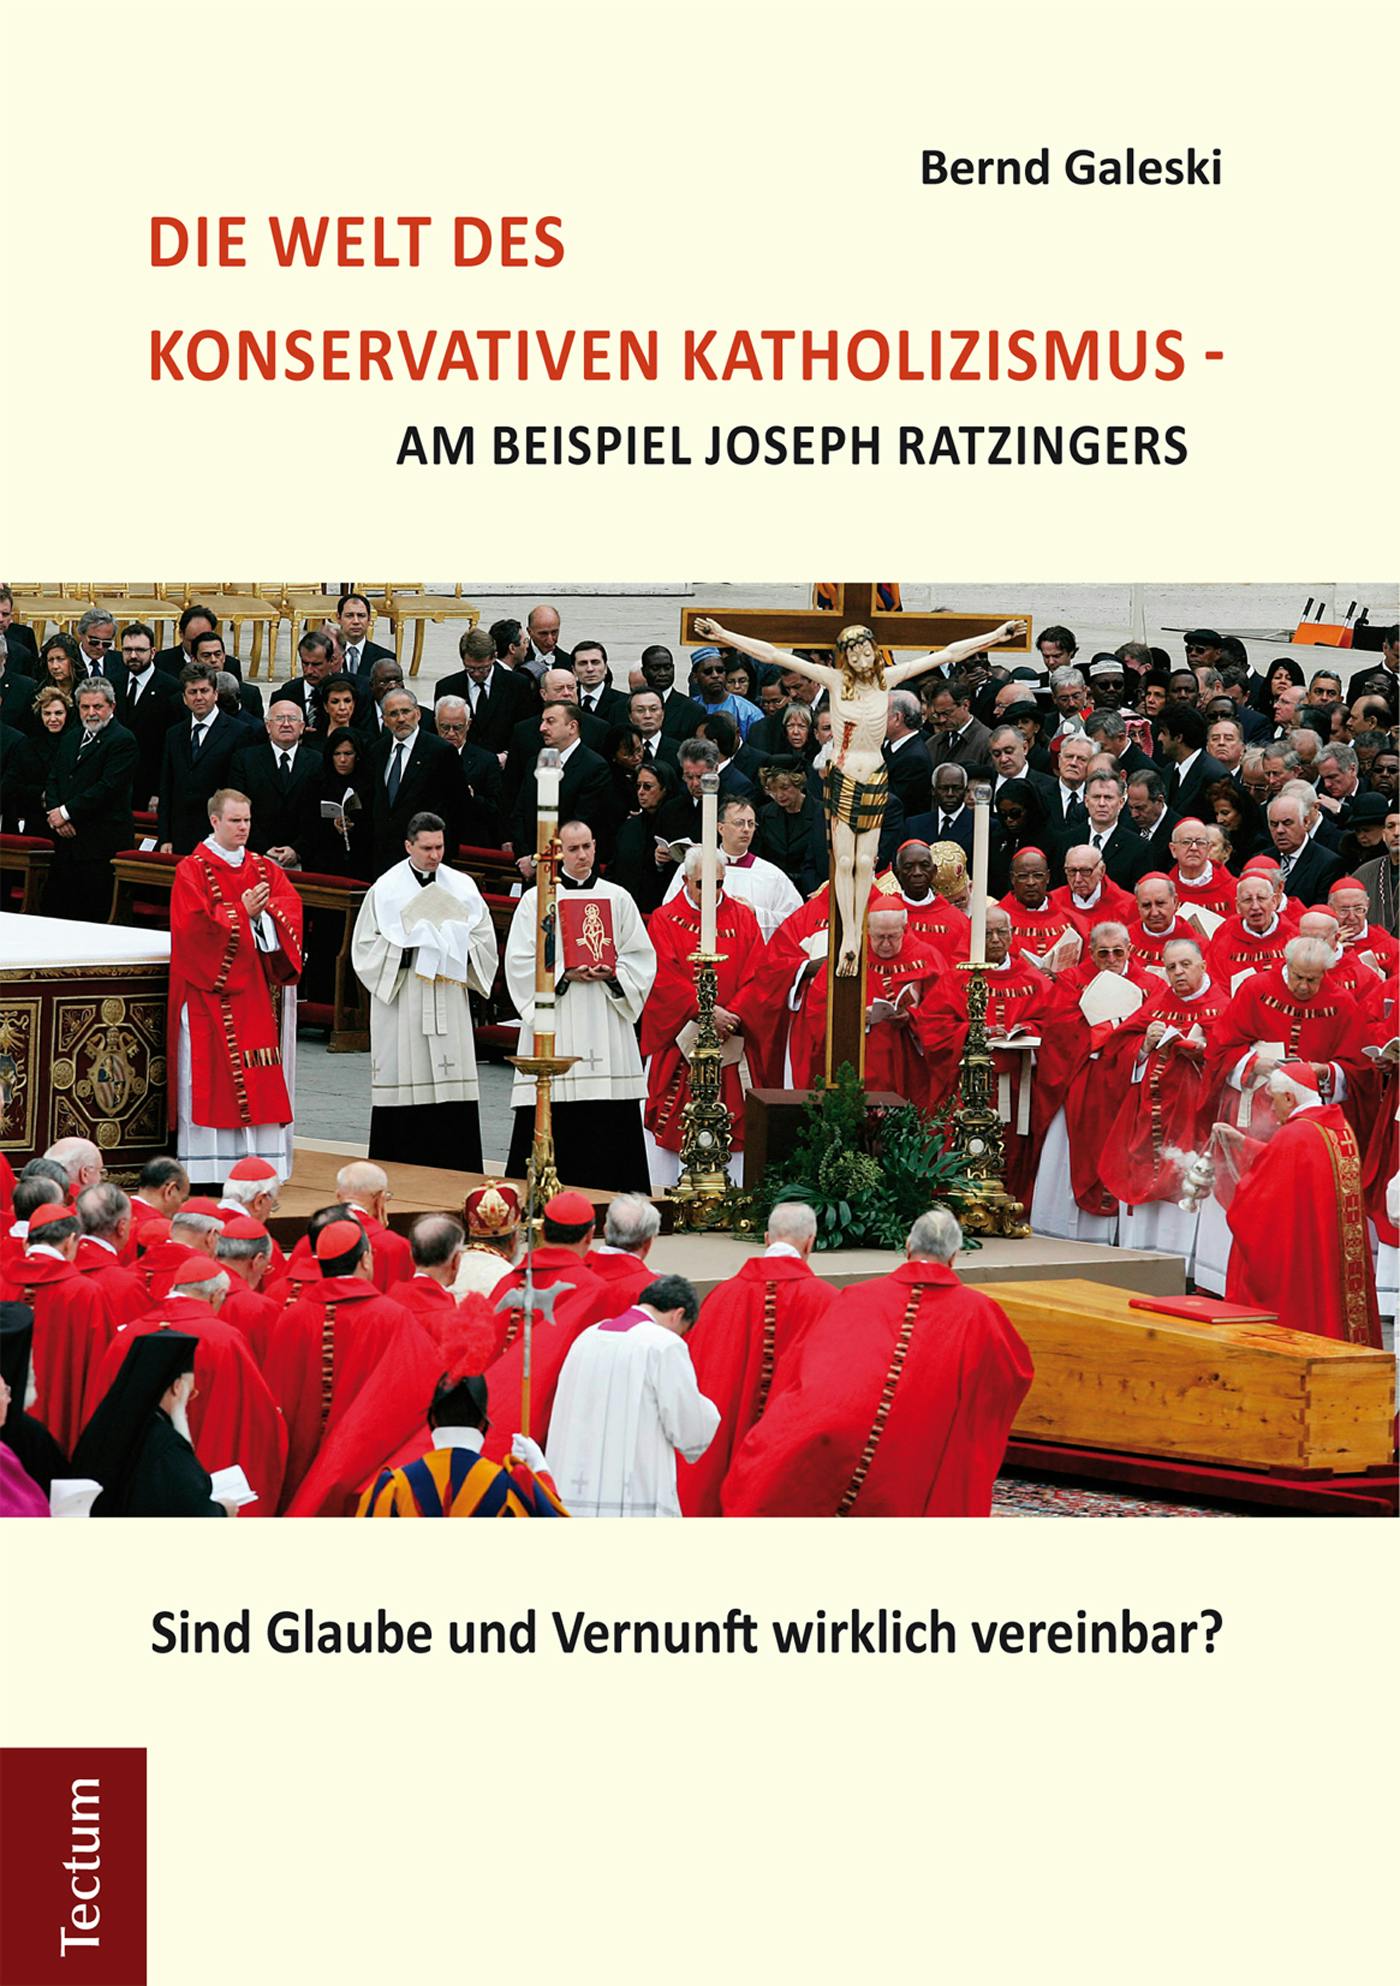 Die Welt des konservativen Katholizismus - am Beispiel Joseph Ratzingers: Sind Glaube und Vernunft wirklich vereinbar? - Bernd Galeski